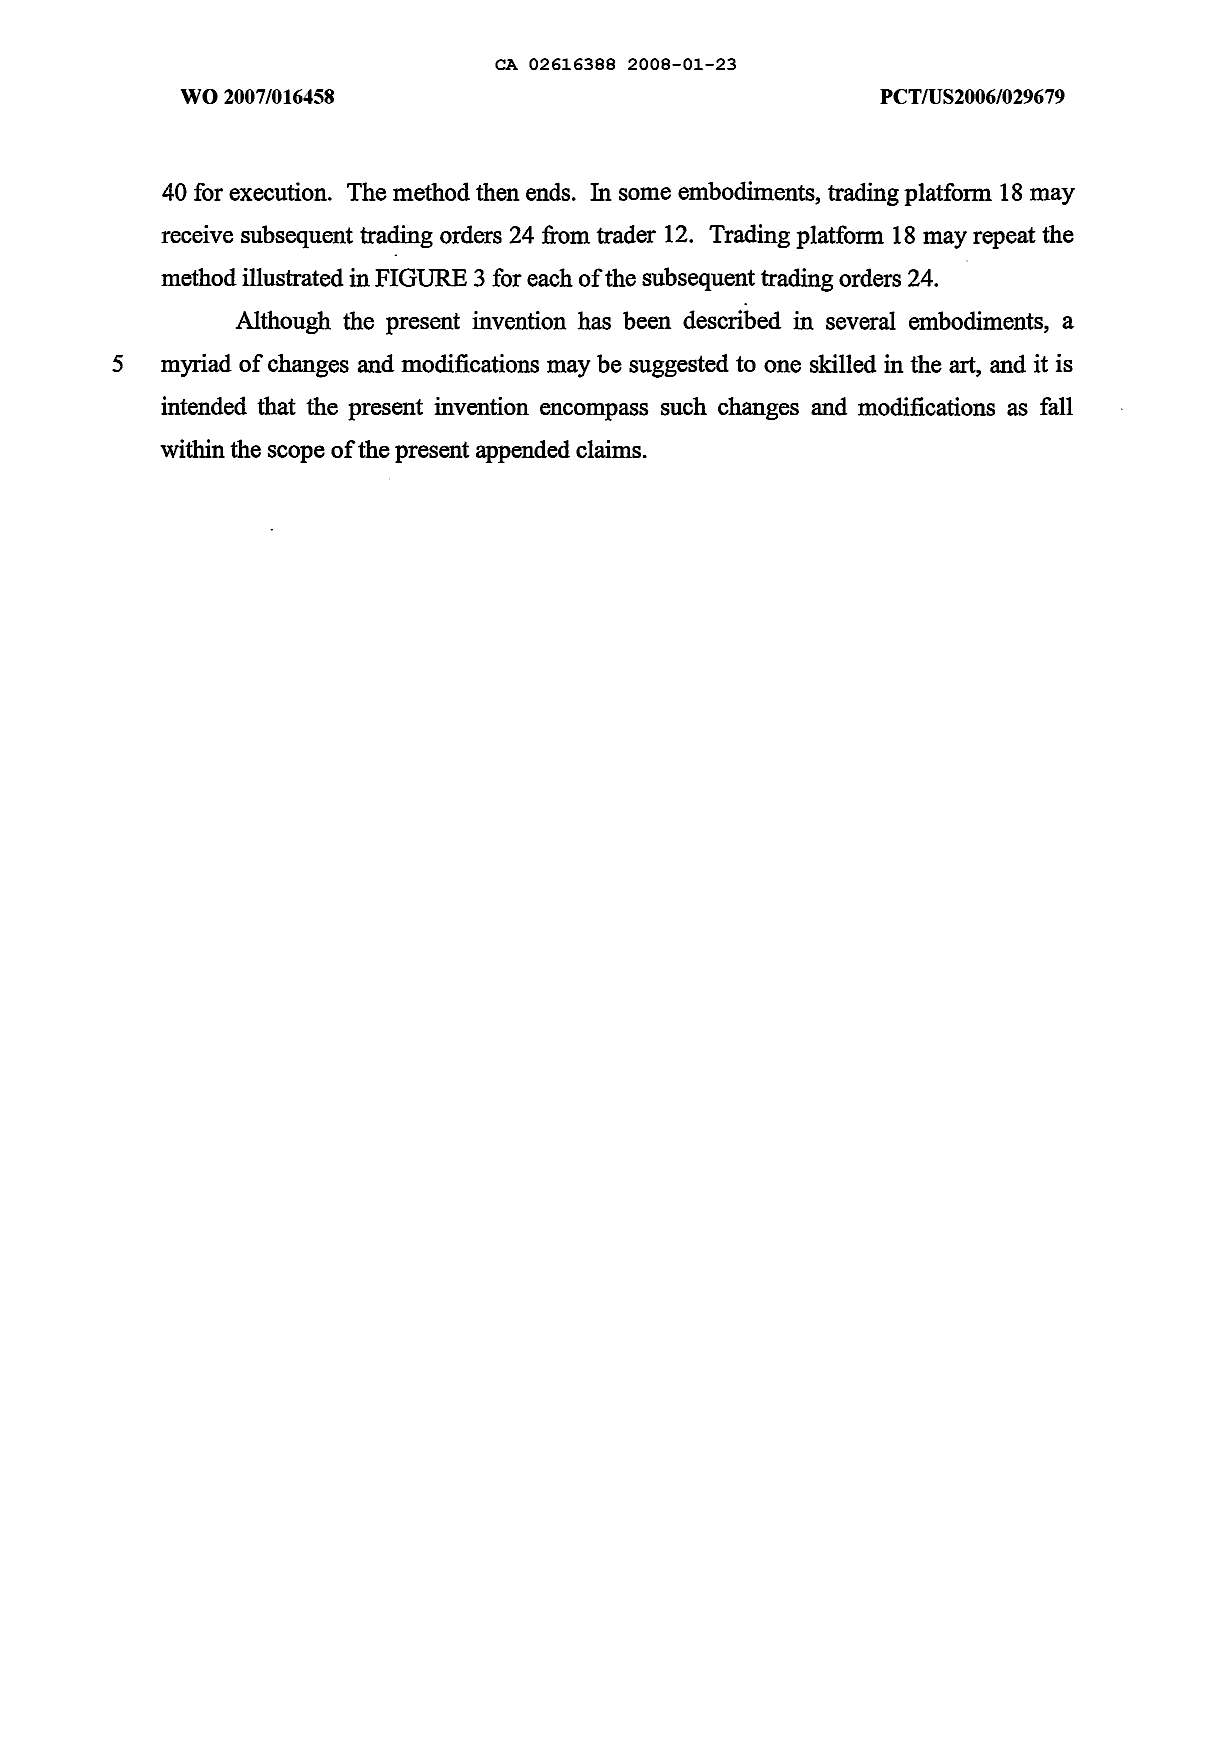 Canadian Patent Document 2616388. Description 20080123. Image 19 of 19